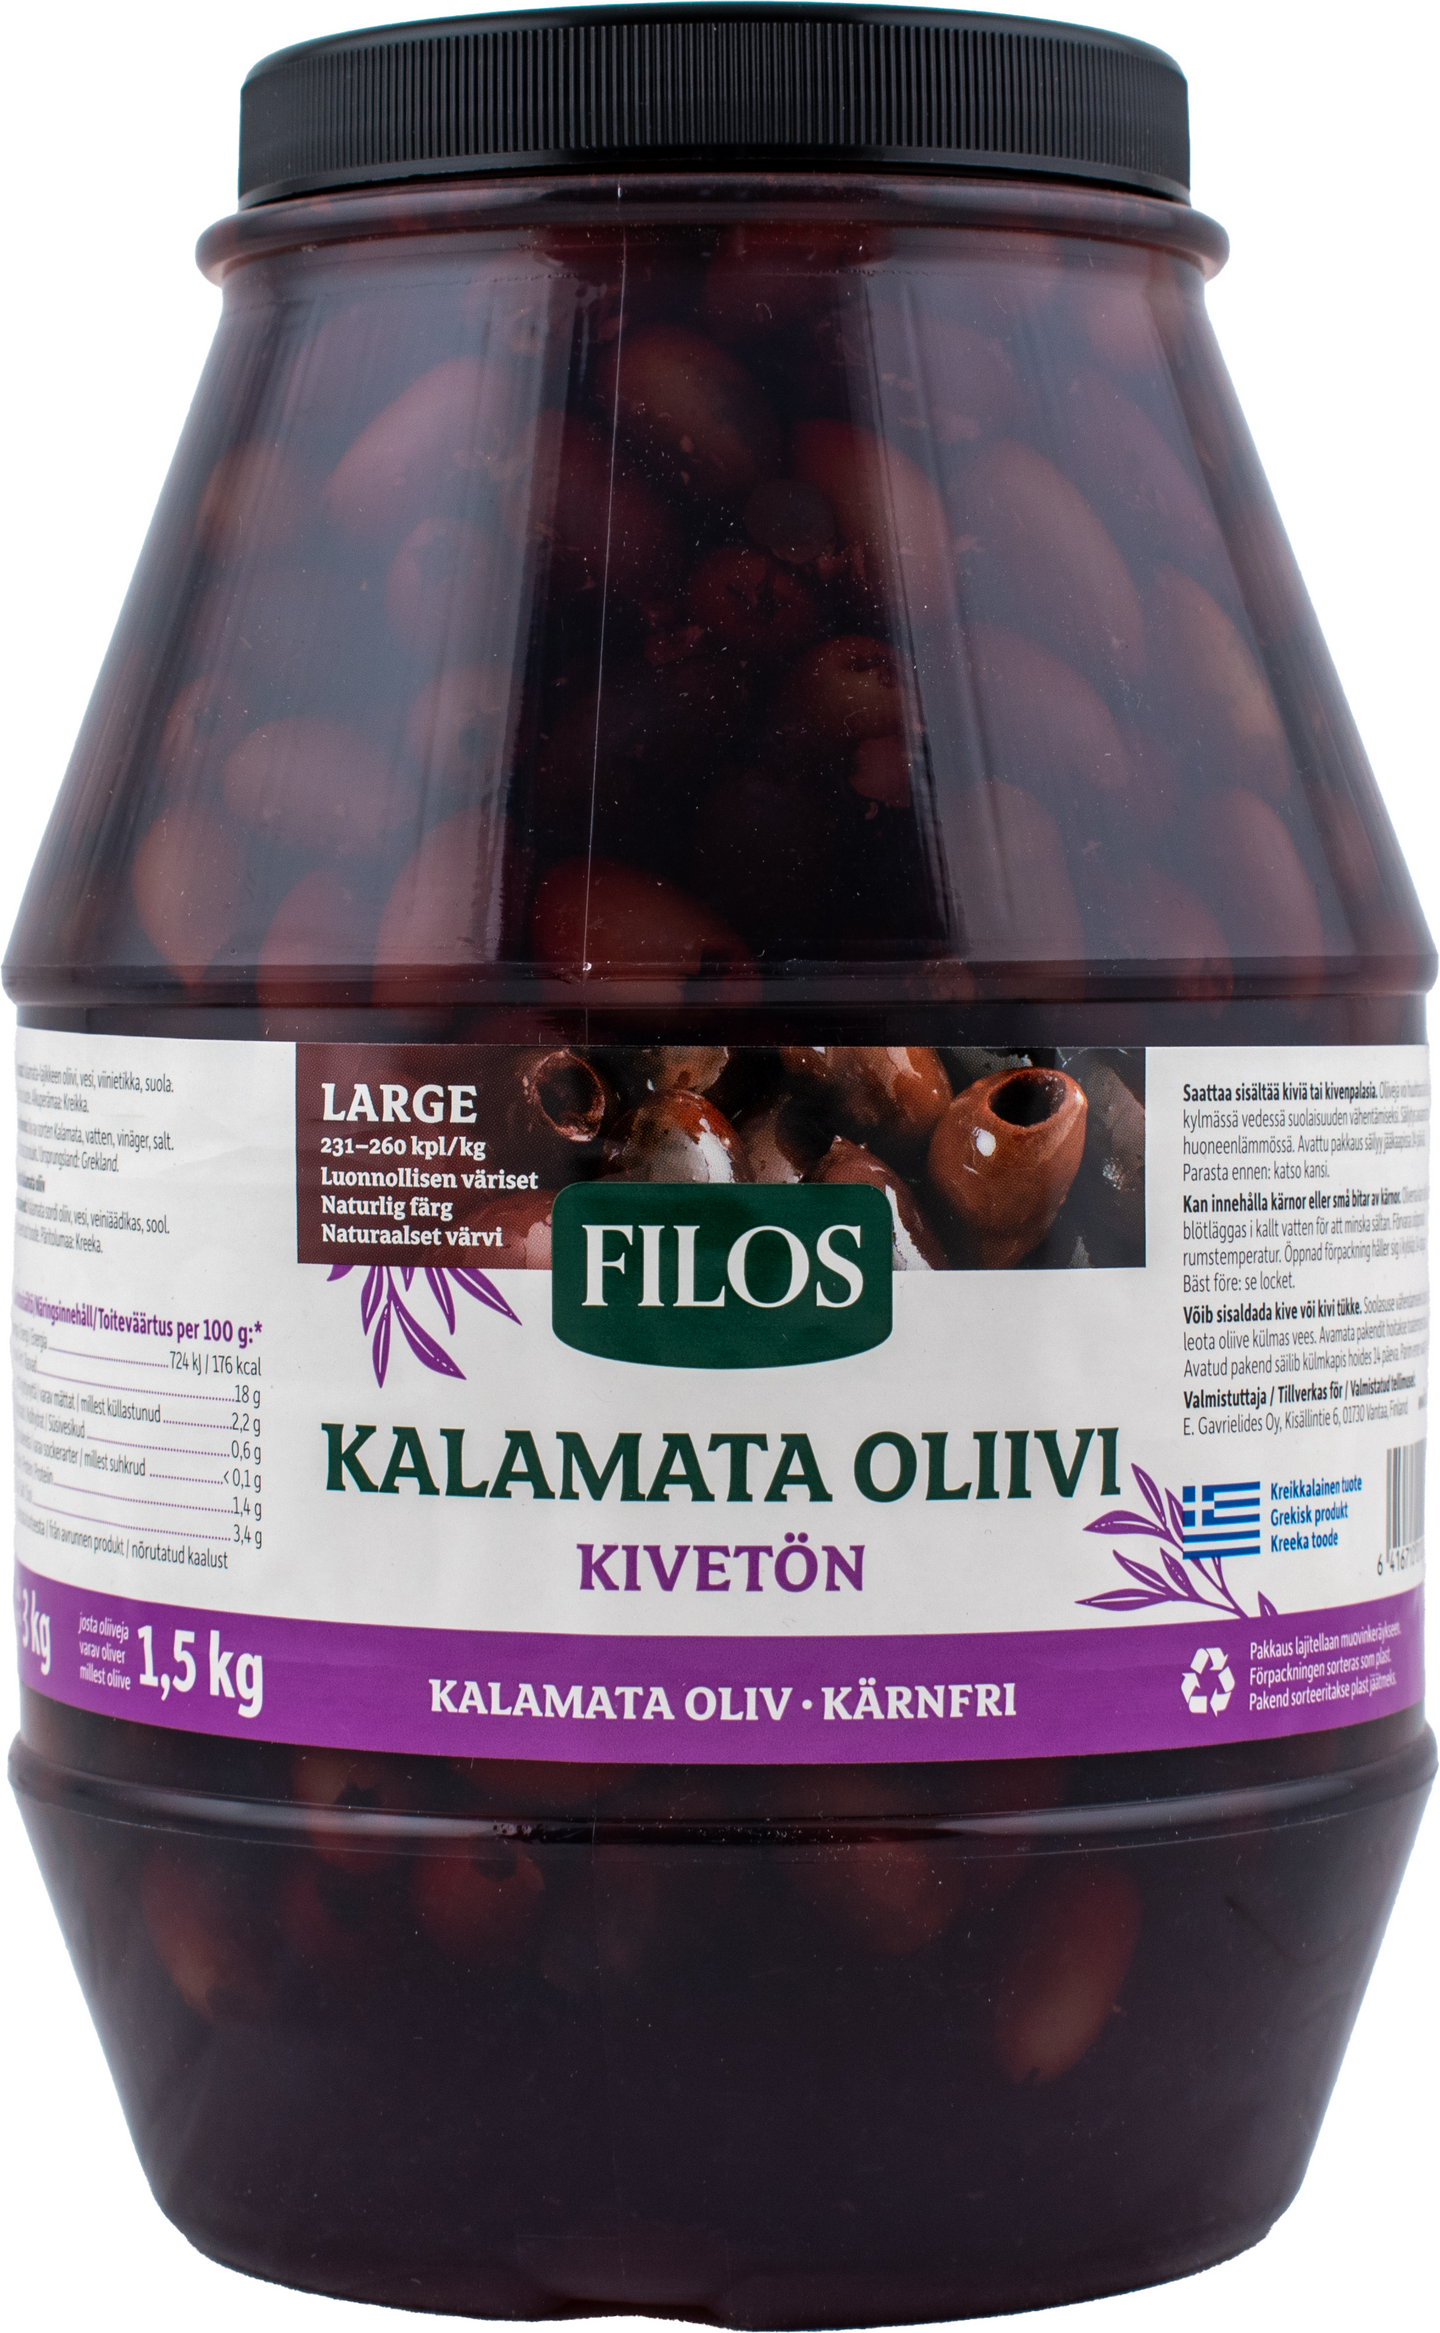 Filos Kalamon-oliivi kivetön 3/1,5kg large